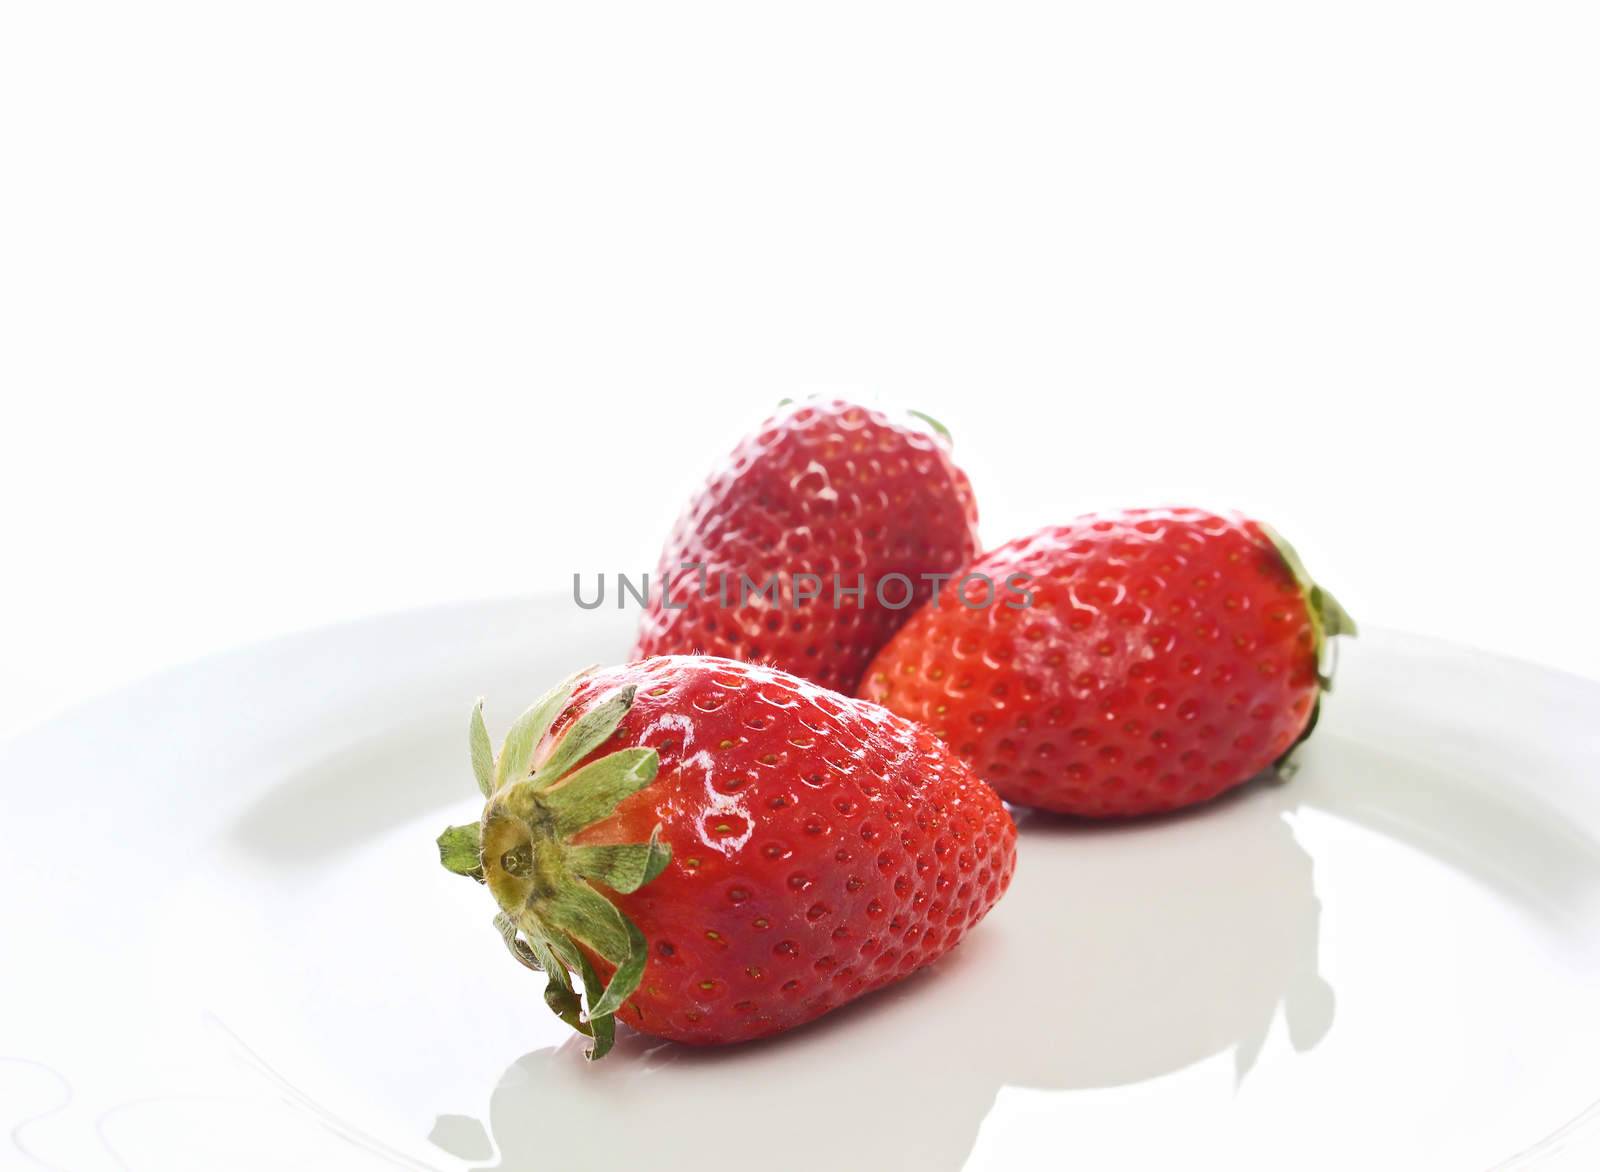 Strawberries by dynamicfoto